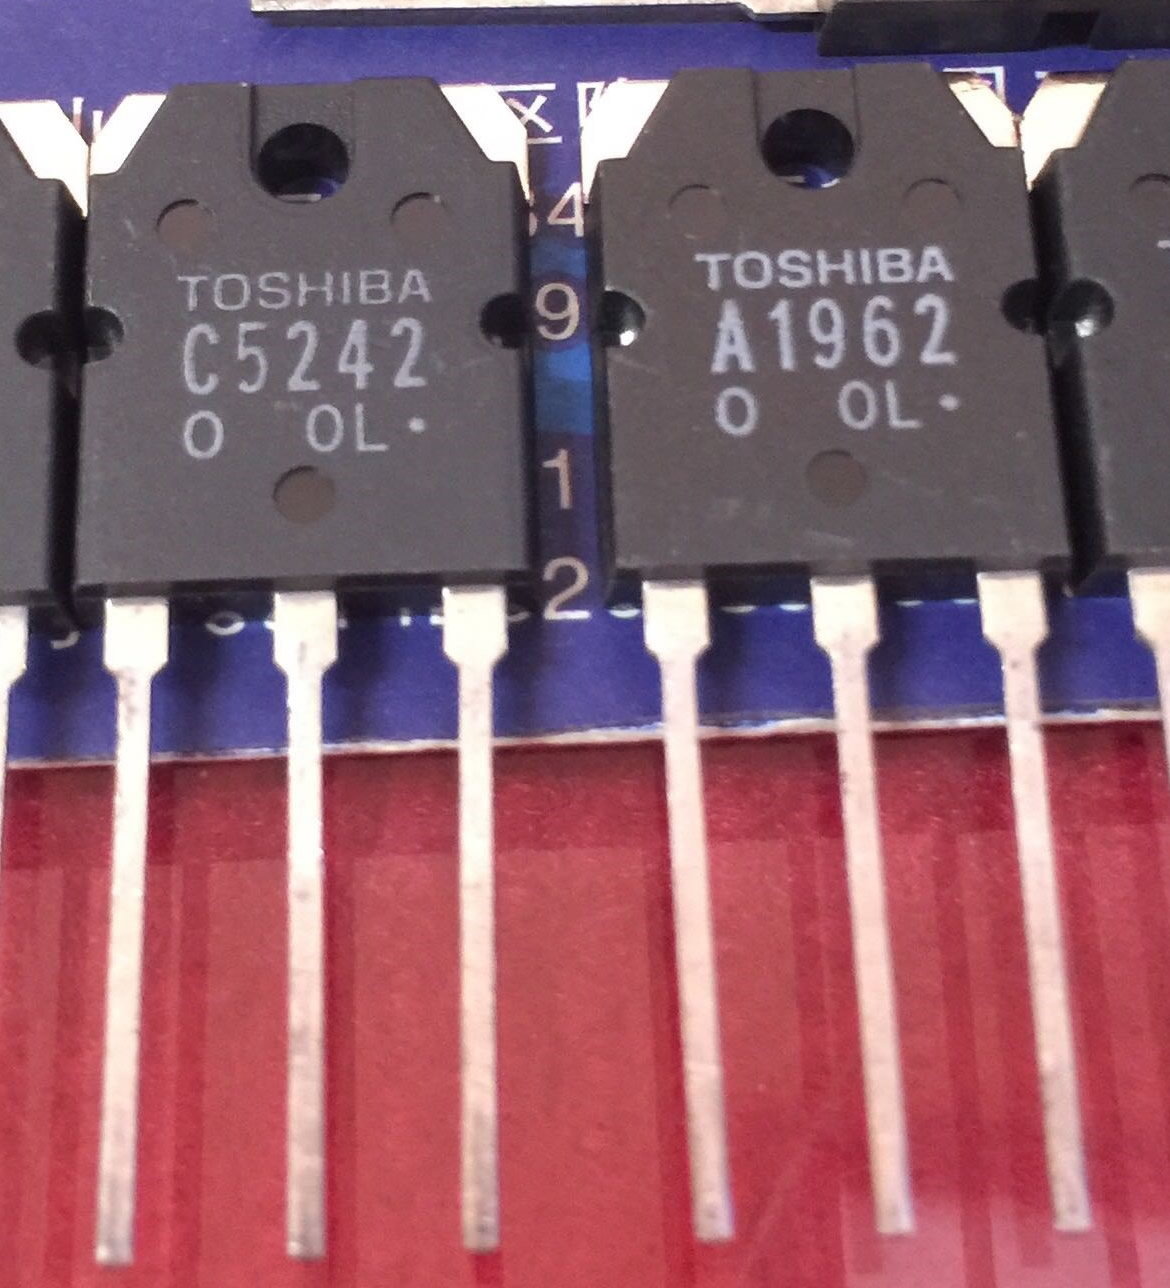 2SA1962 2SC5242 A1962 C5242 New Original Toshiba 5pair/lot